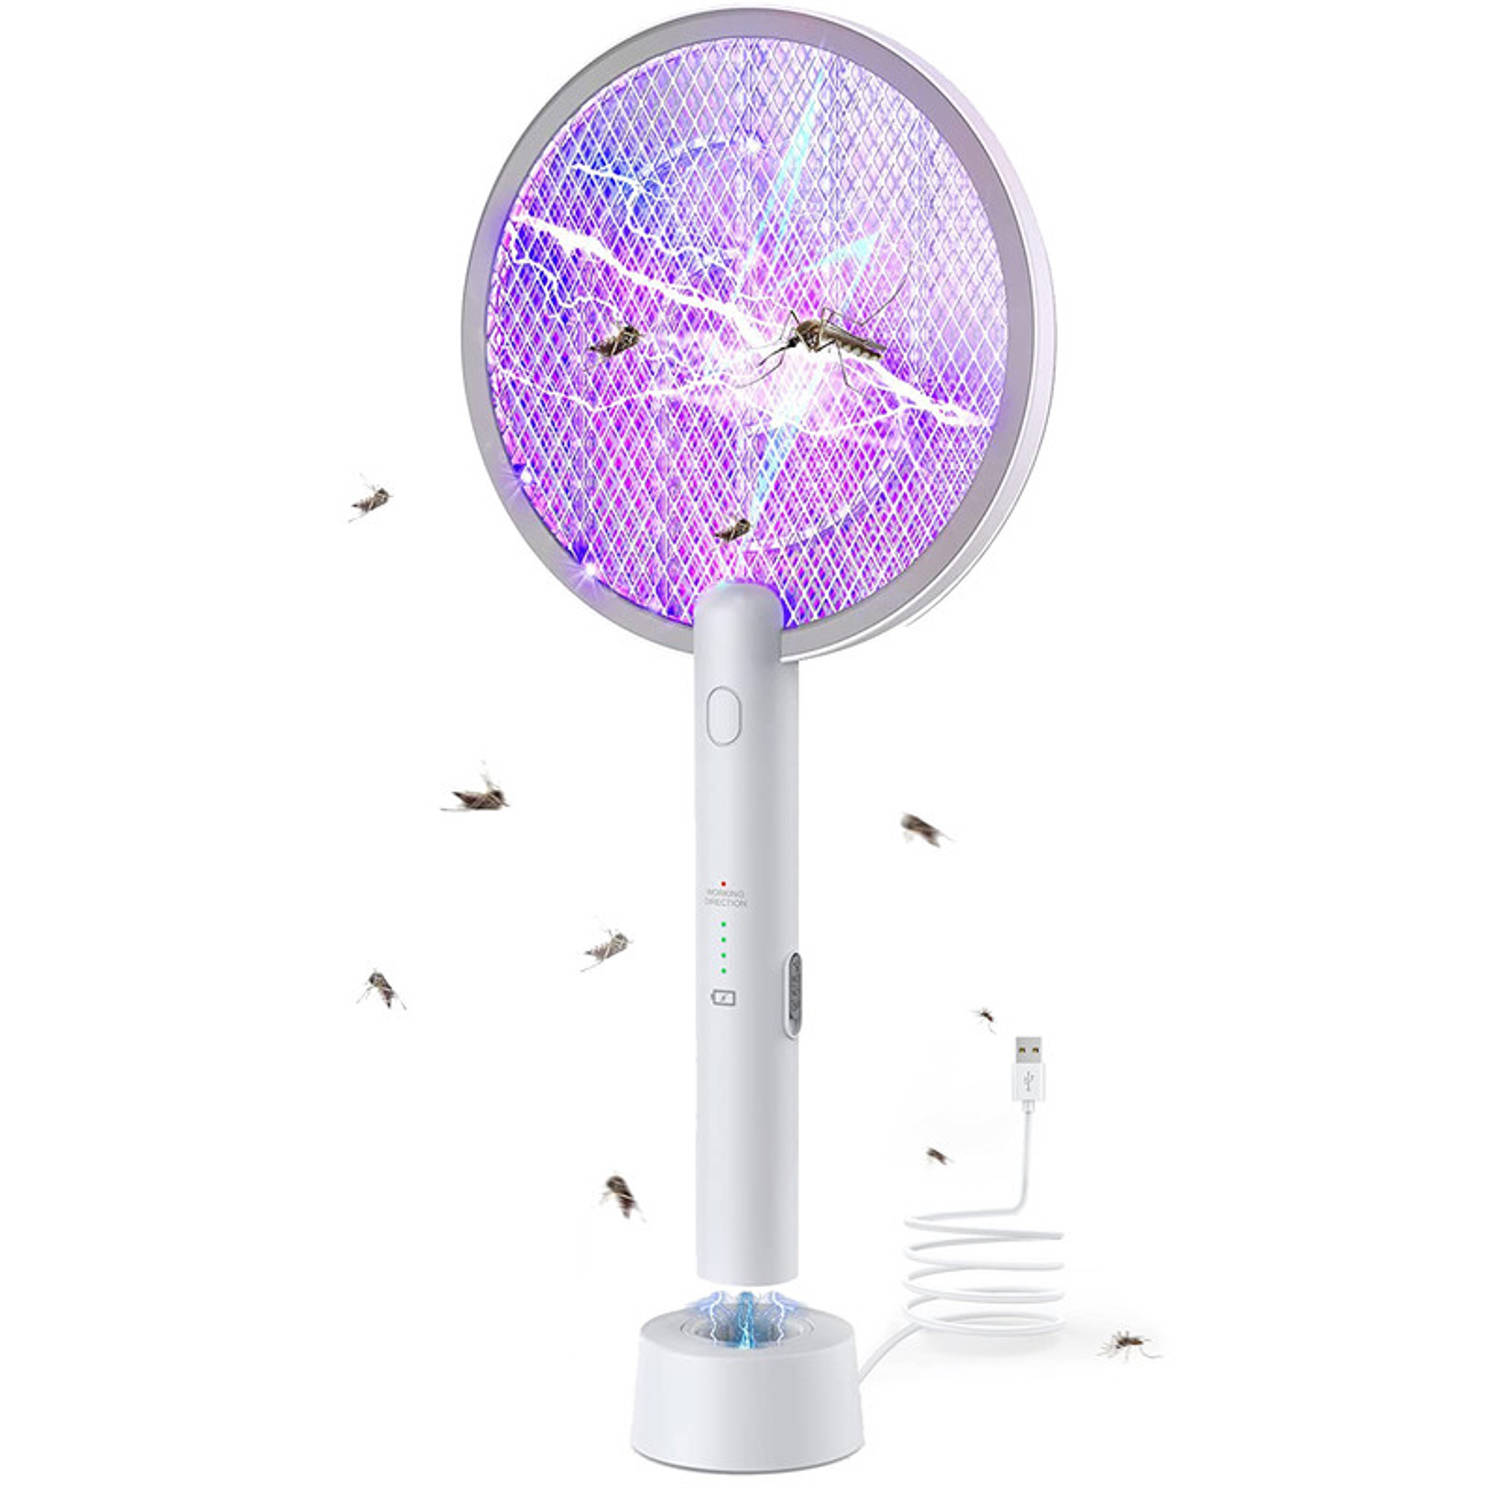 Vicon 2-in-1 Elektrische vliegenmepper en muggenlamp - Voor vliegen, muggen, fruitvliegjes etc. - Vliegenvanger - Muggenvanger